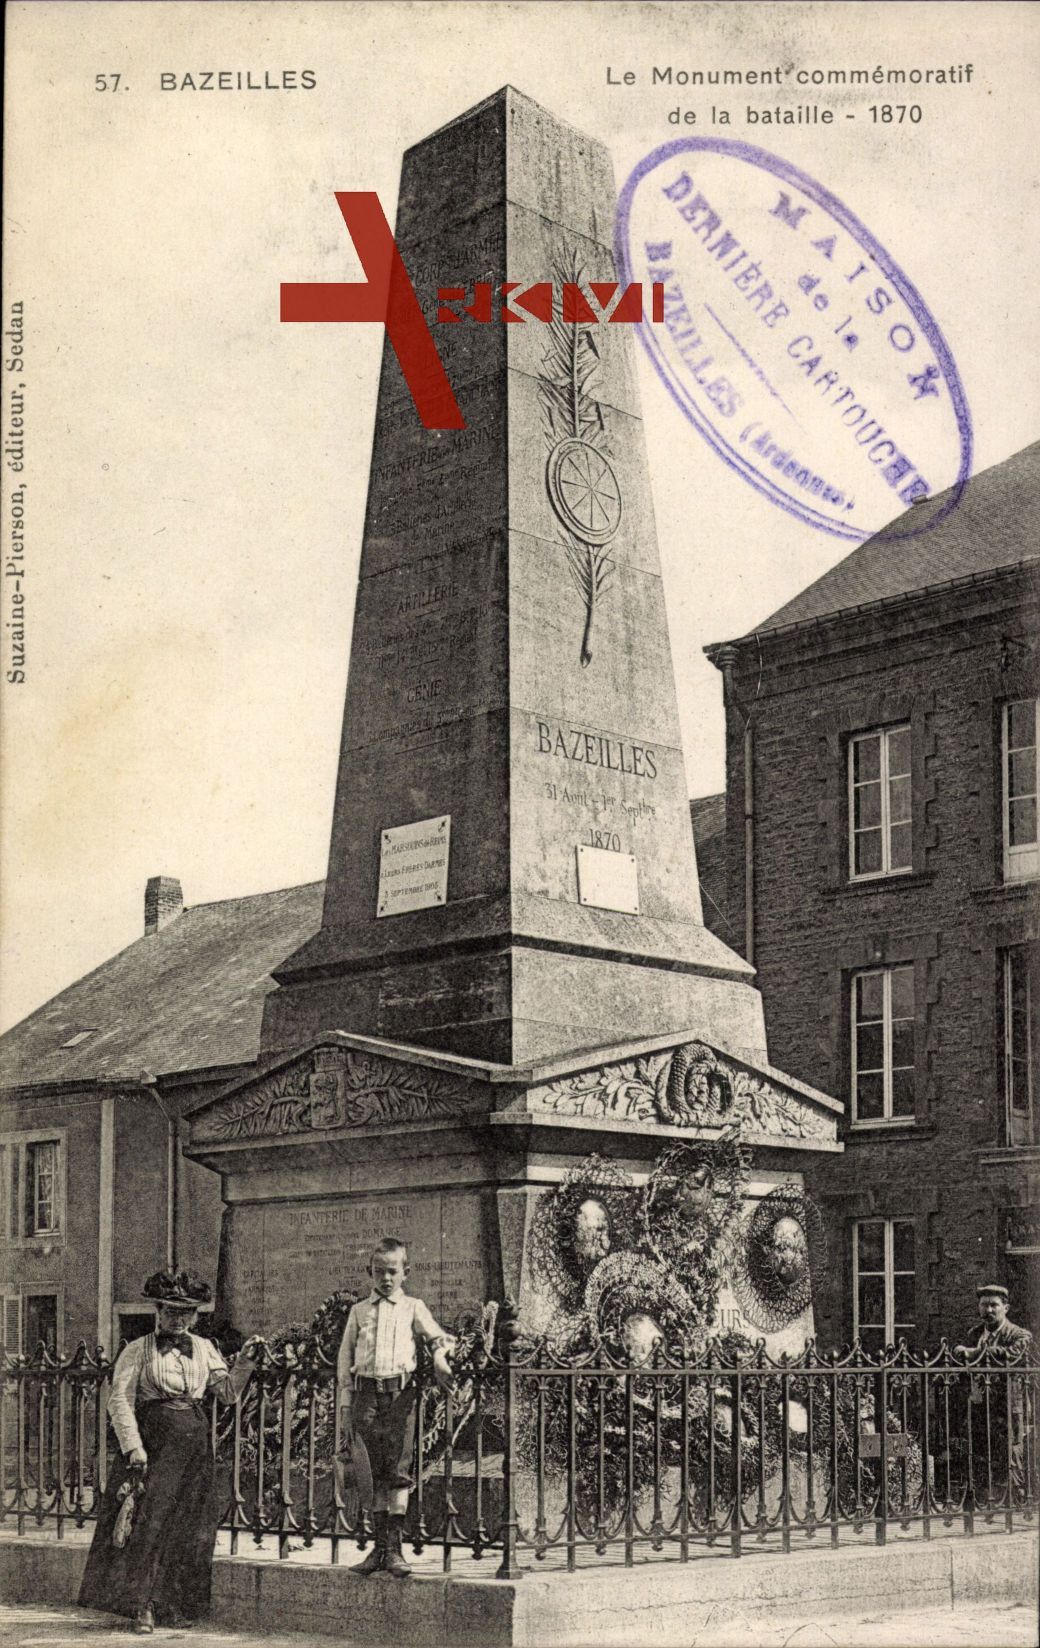 Bazeilles Ardennes, Le Monument commémoratif de la bataille, 1870